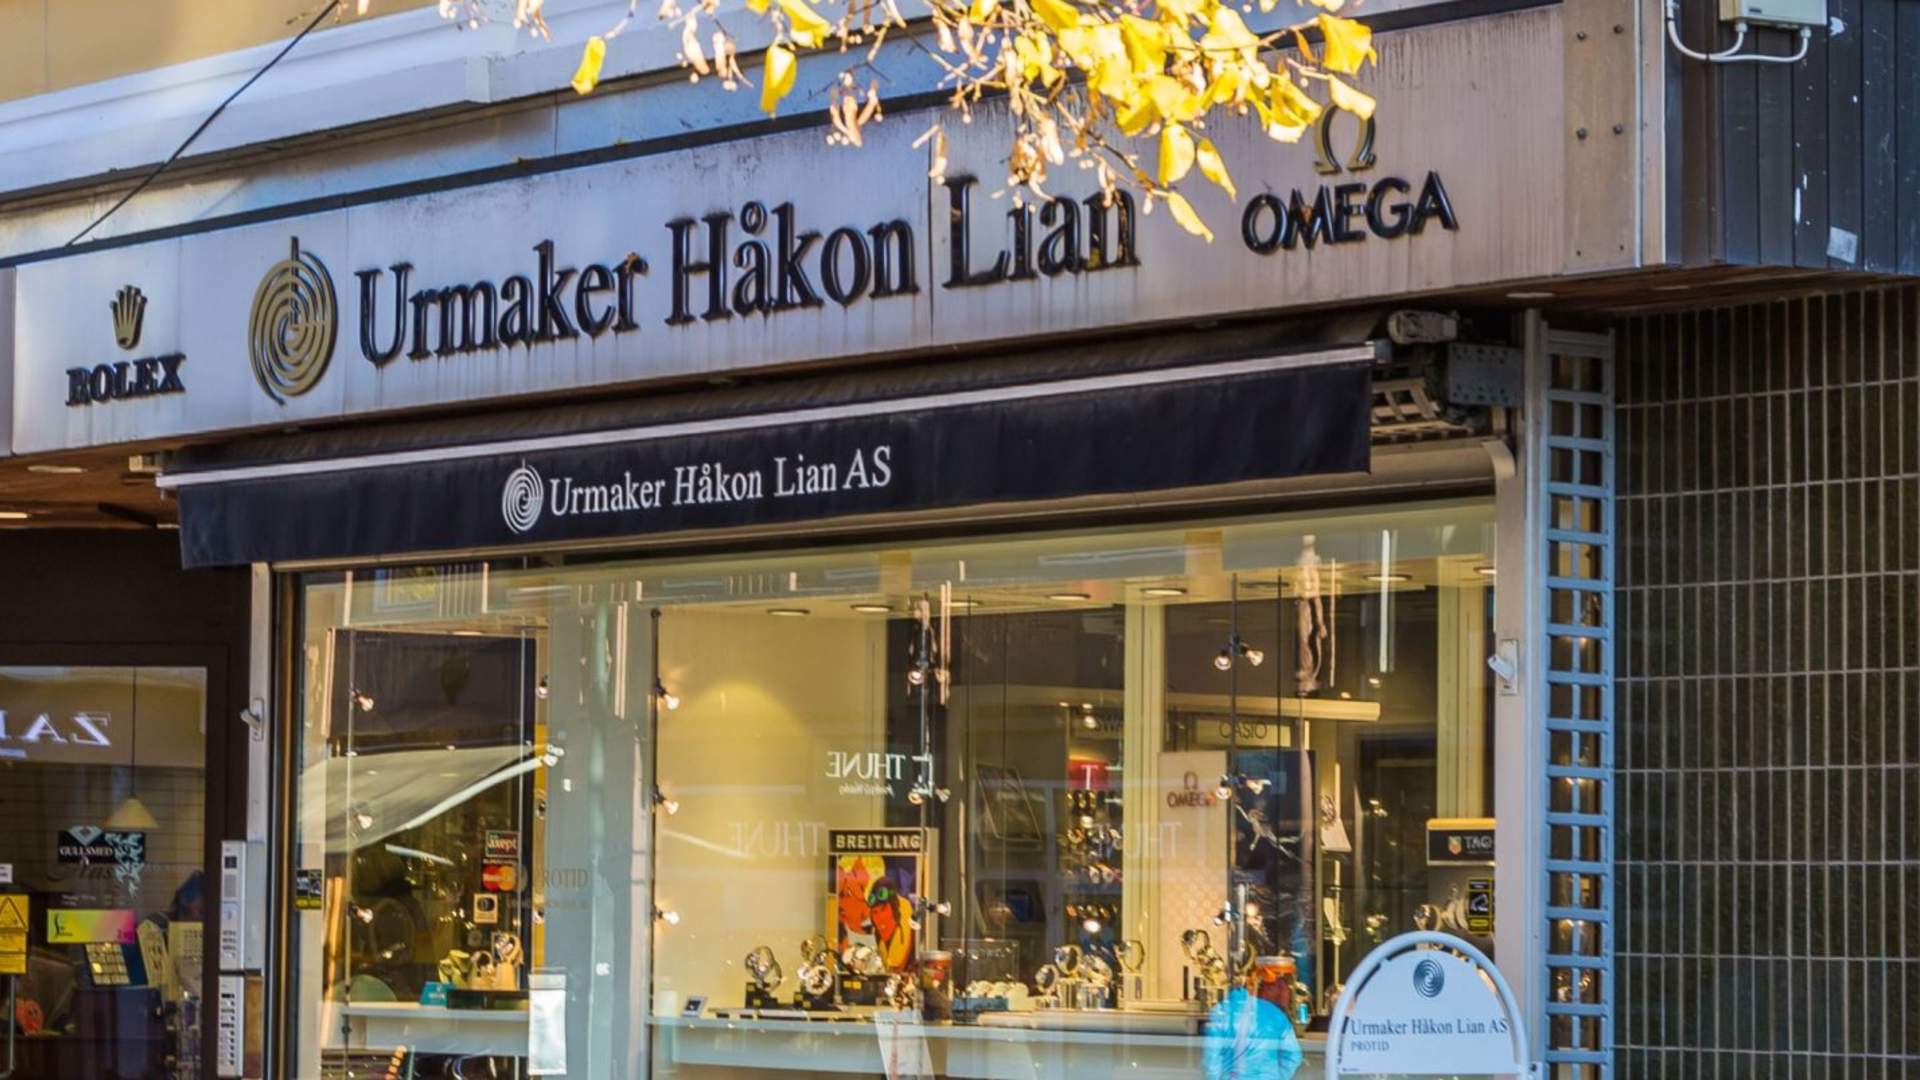 Urmaker Håkon Lian